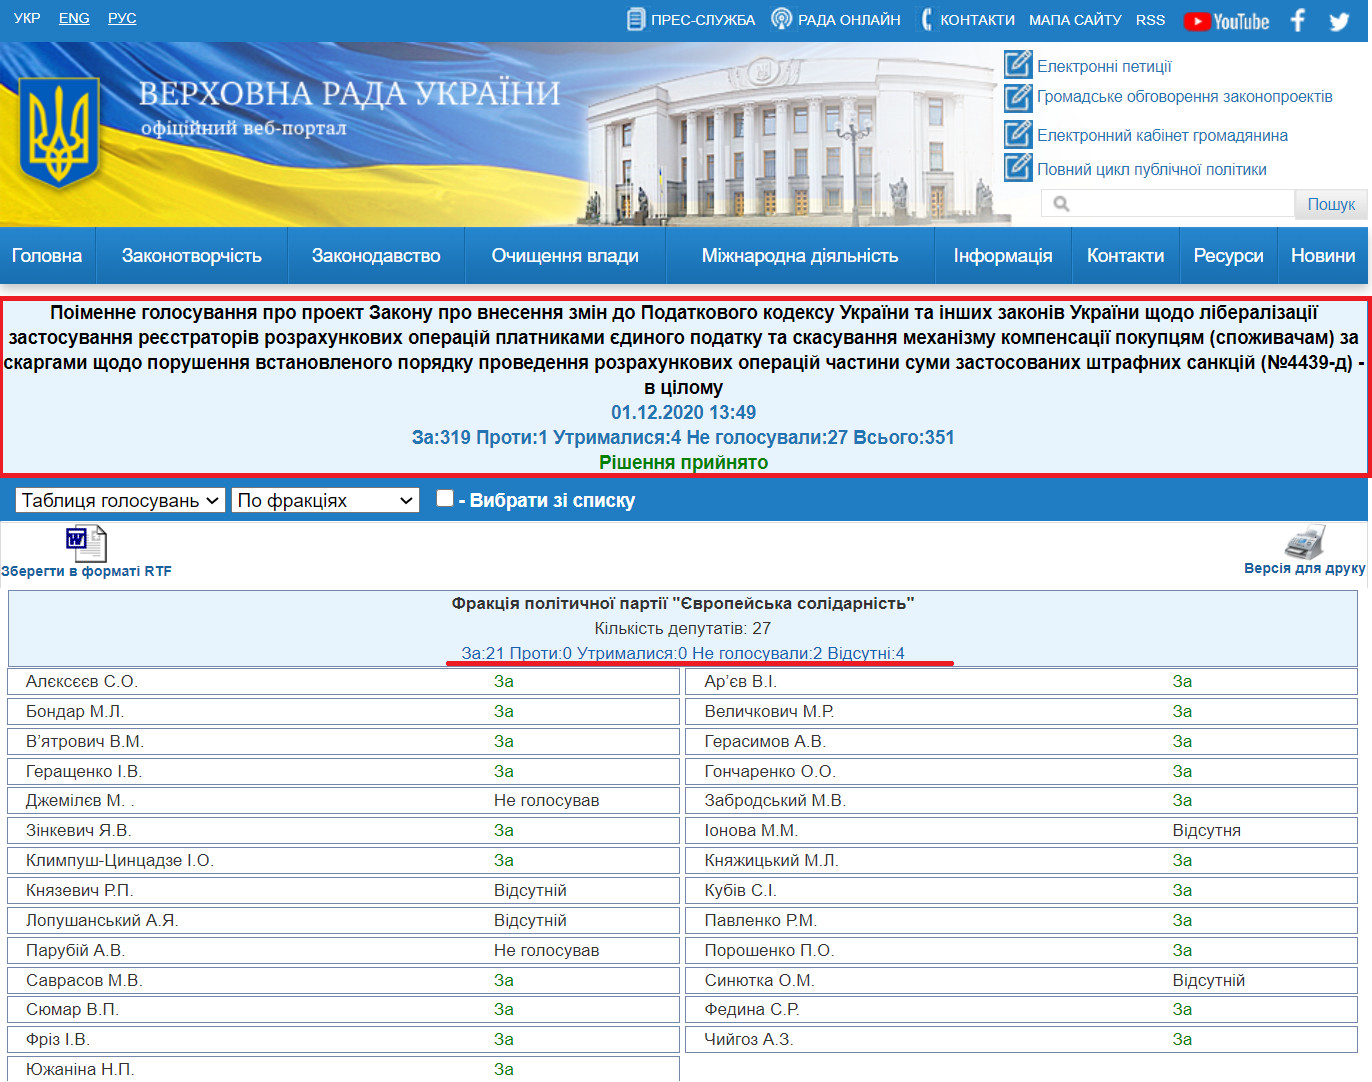 http://w1.c1.rada.gov.ua/pls/radan_gs09/ns_golos?g_id=8321